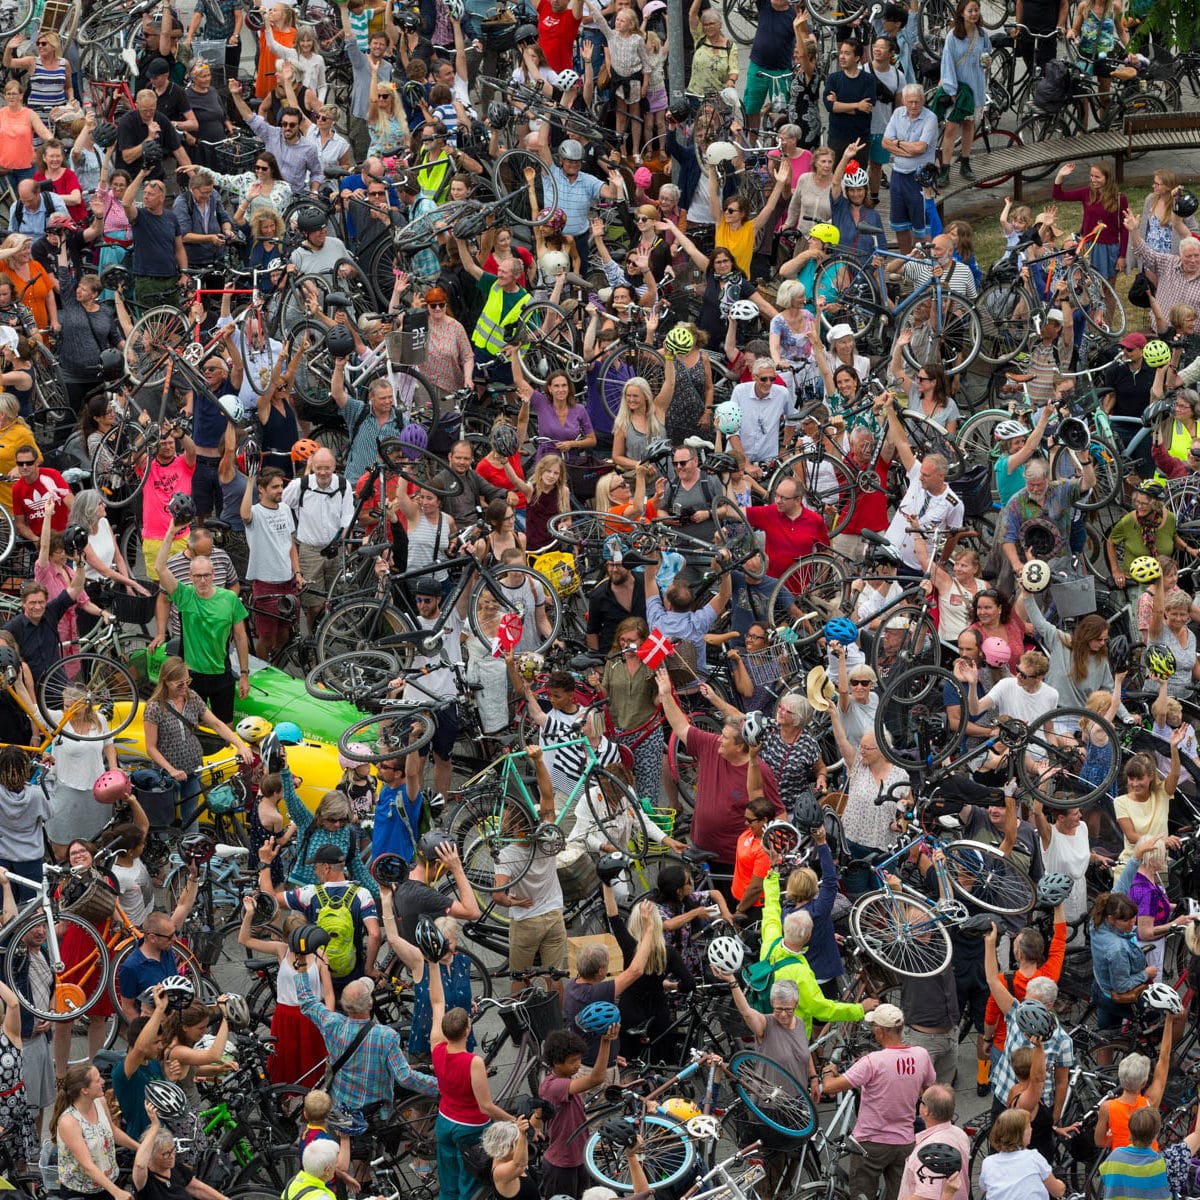 Manifestation (flashmob) de cyclistes pour un monde meilleur, Israels Plads, Copenhague, Danemark. (55°40’ N - 12°34’ E)